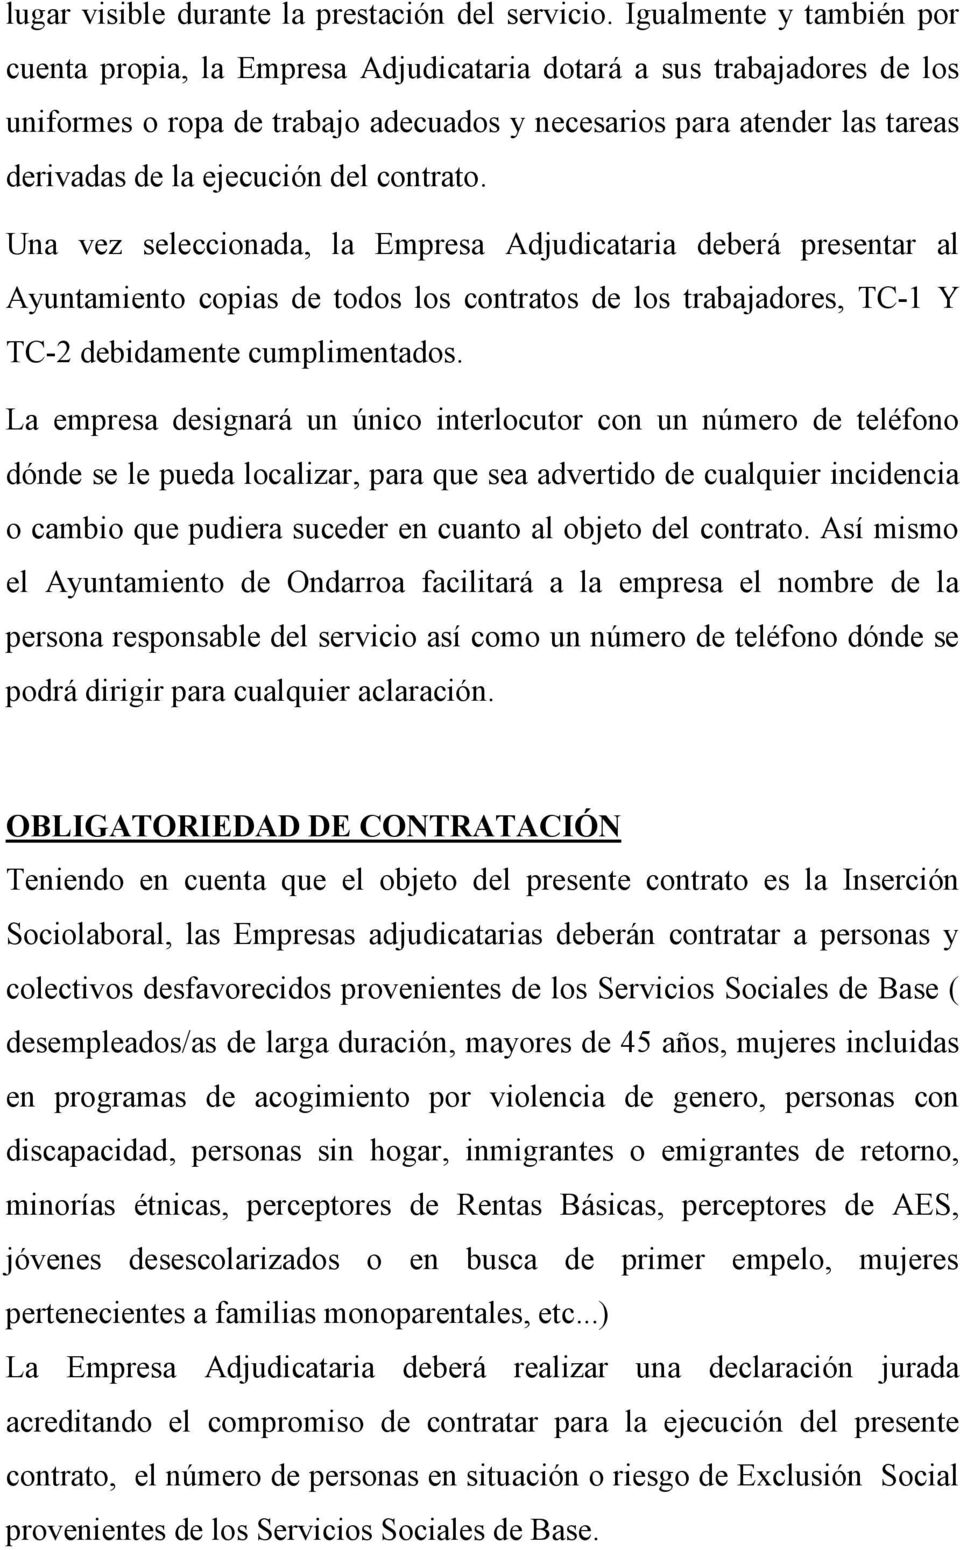 del contrato. Una vez seleccionada, la Empresa Adjudicataria deberá presentar al Ayuntamiento copias de todos los contratos de los trabajadores, TC-1 Y TC-2 debidamente cumplimentados.